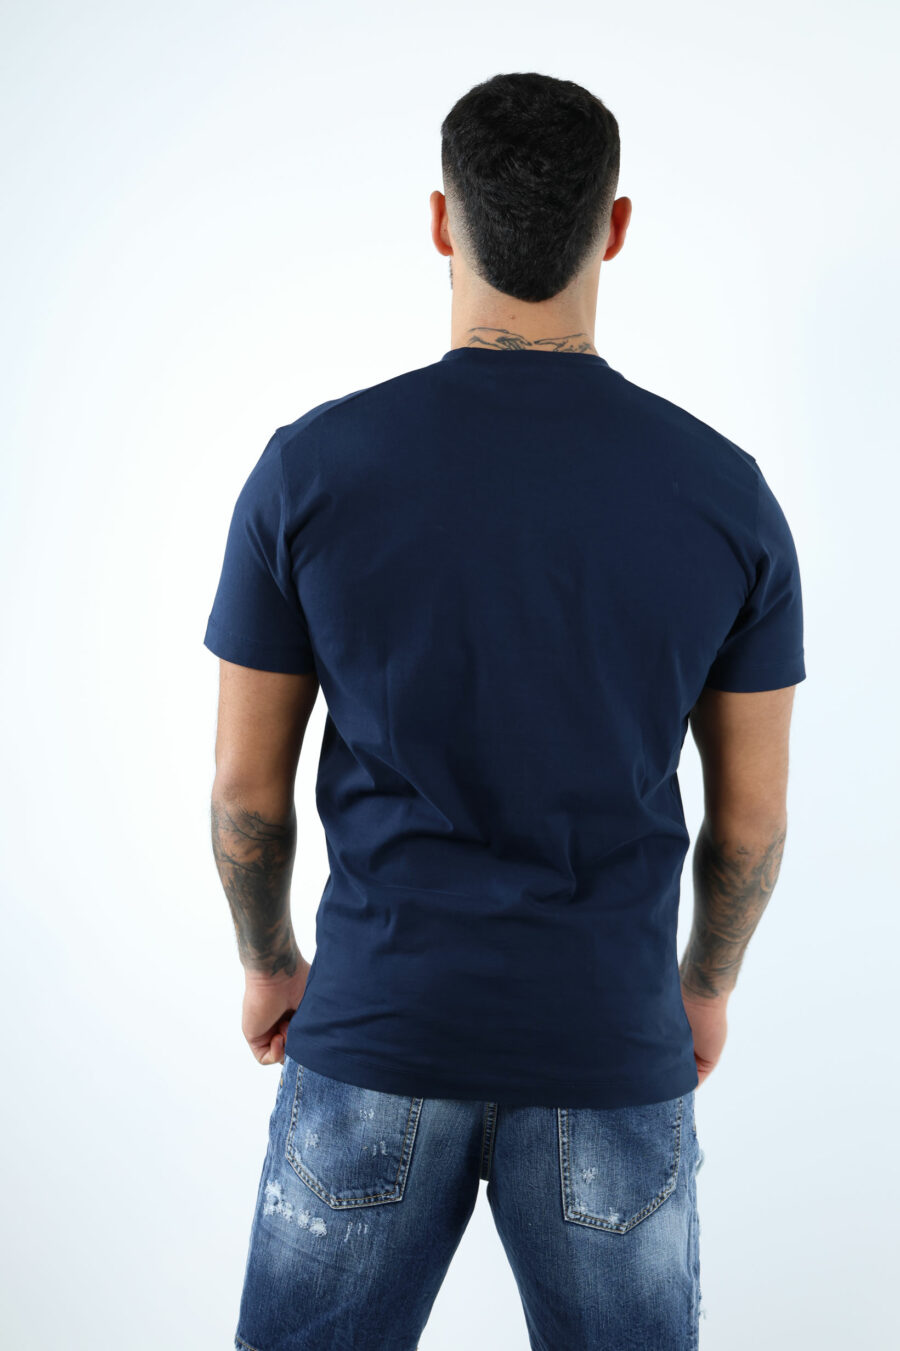 Camiseta azul oscuro con maxilogo "ceresio 9, milano" - 106849